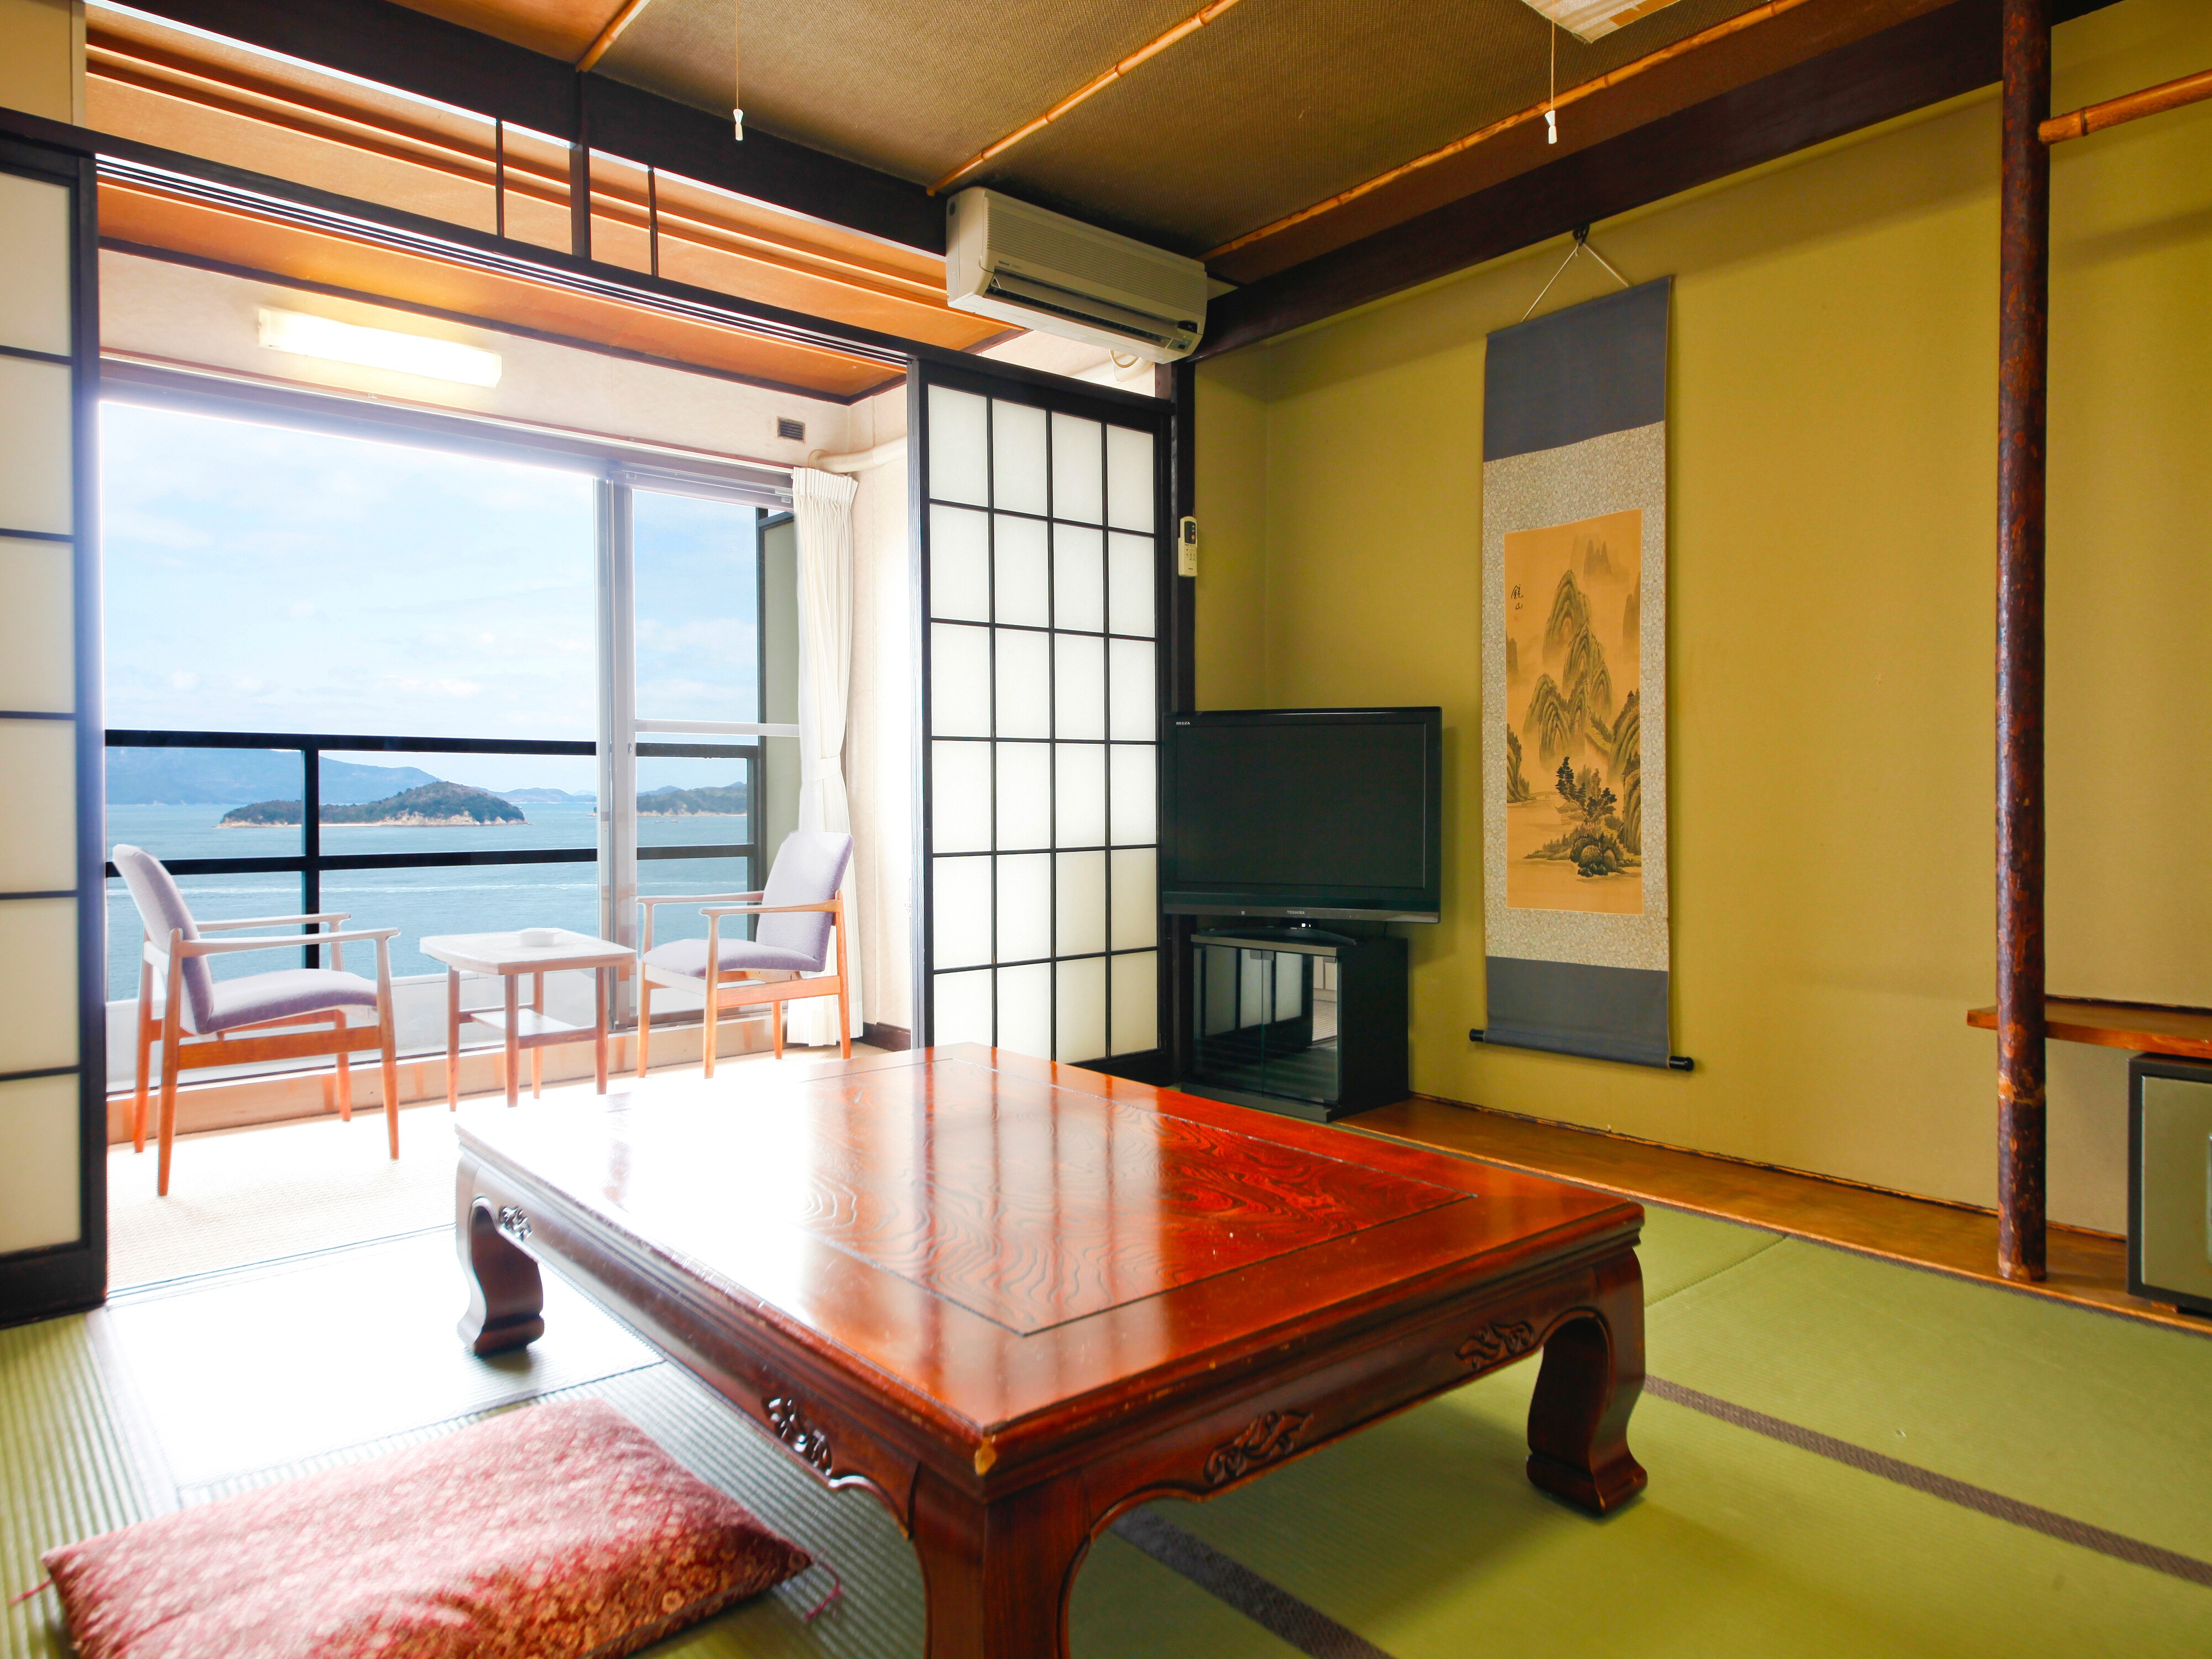 日式房間<8張榻榻米可眺望瀨戶內海>